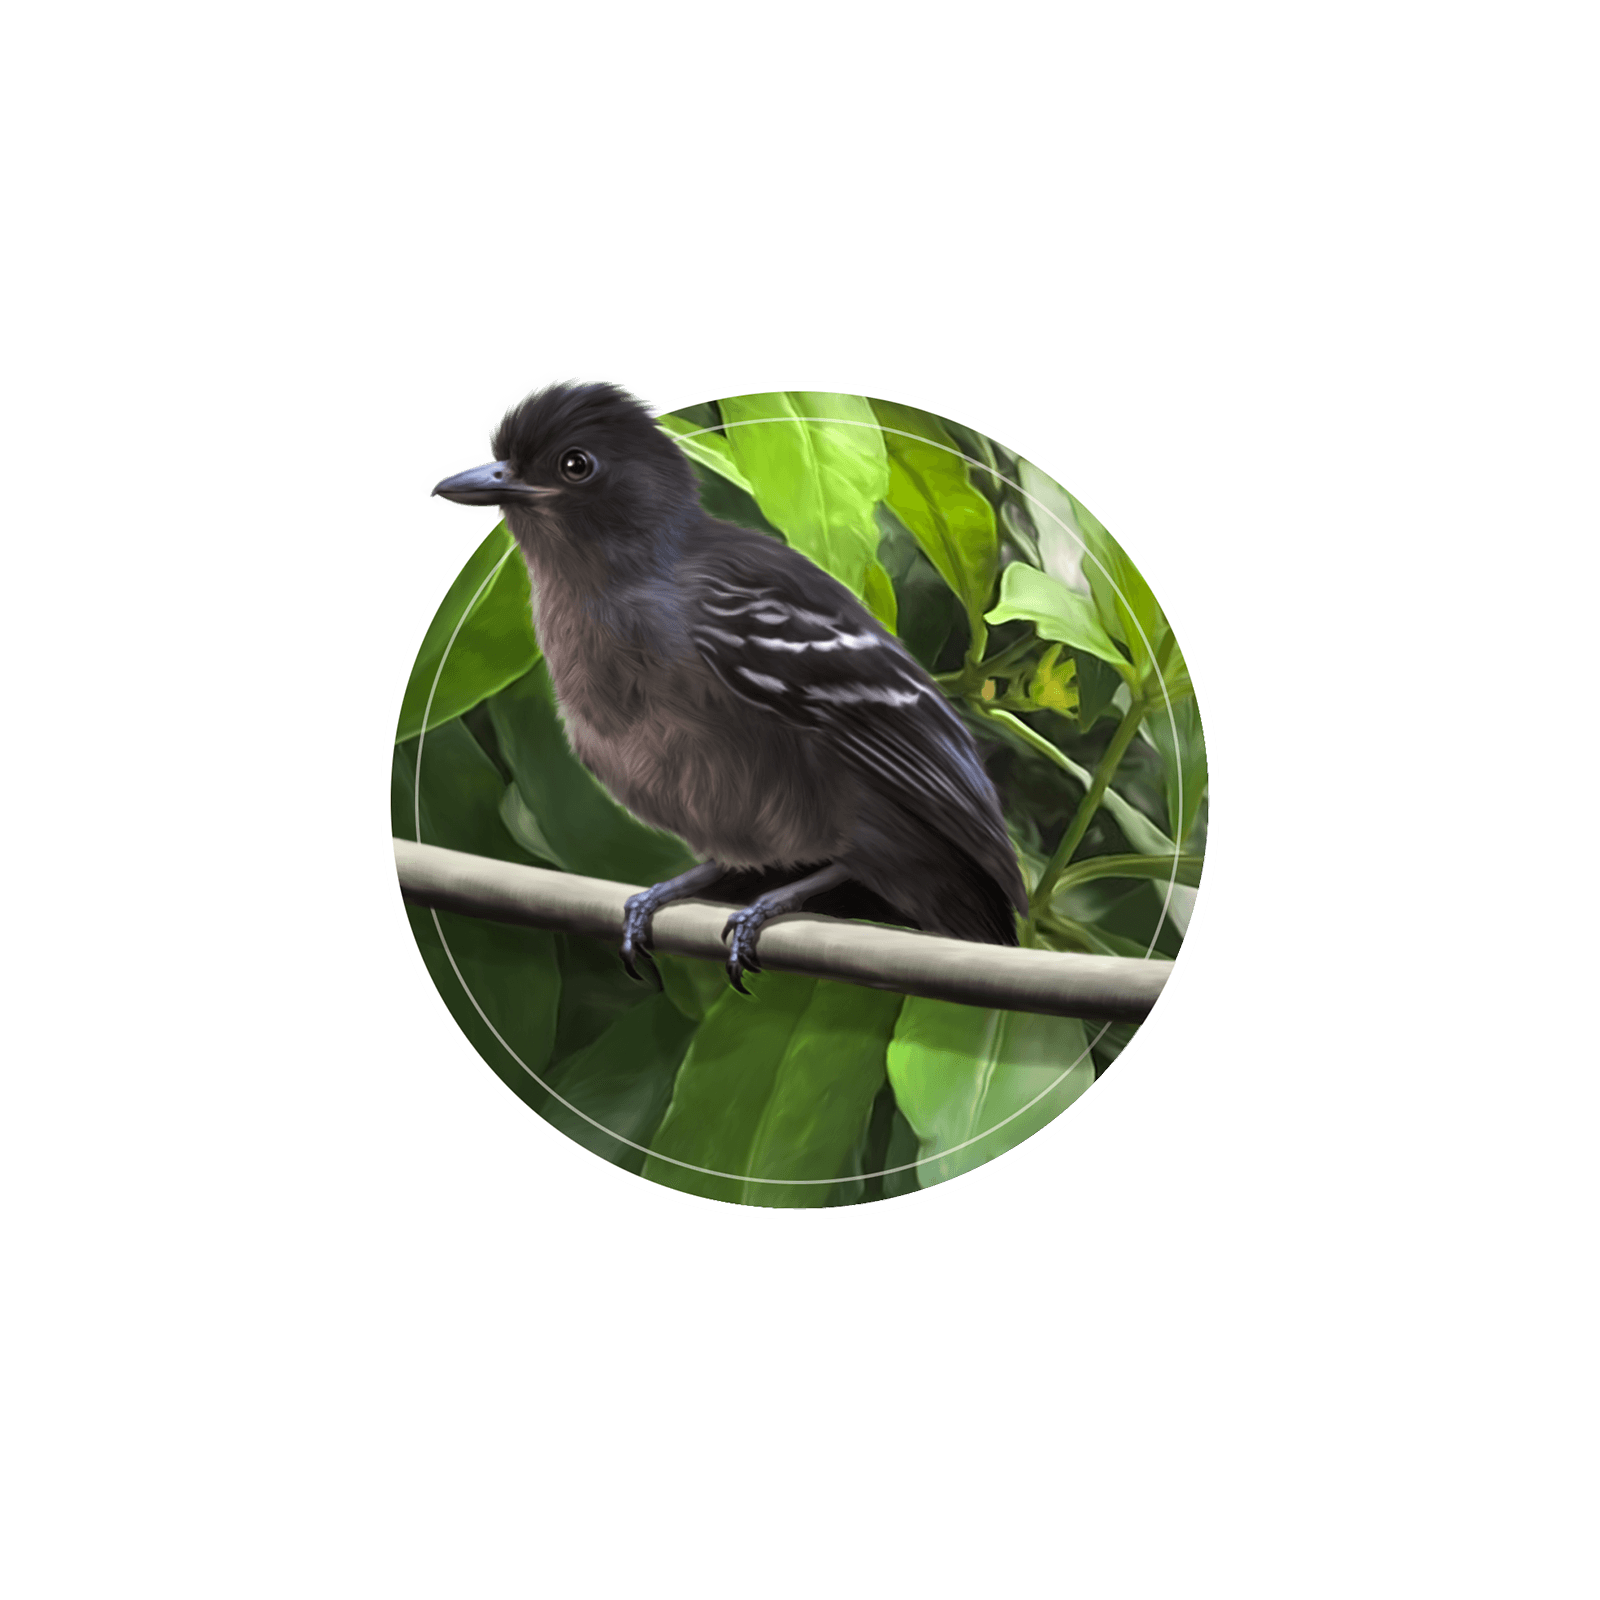 Ilustração do pequeno pássaro choca-preta-e-cinza em galho de árvore